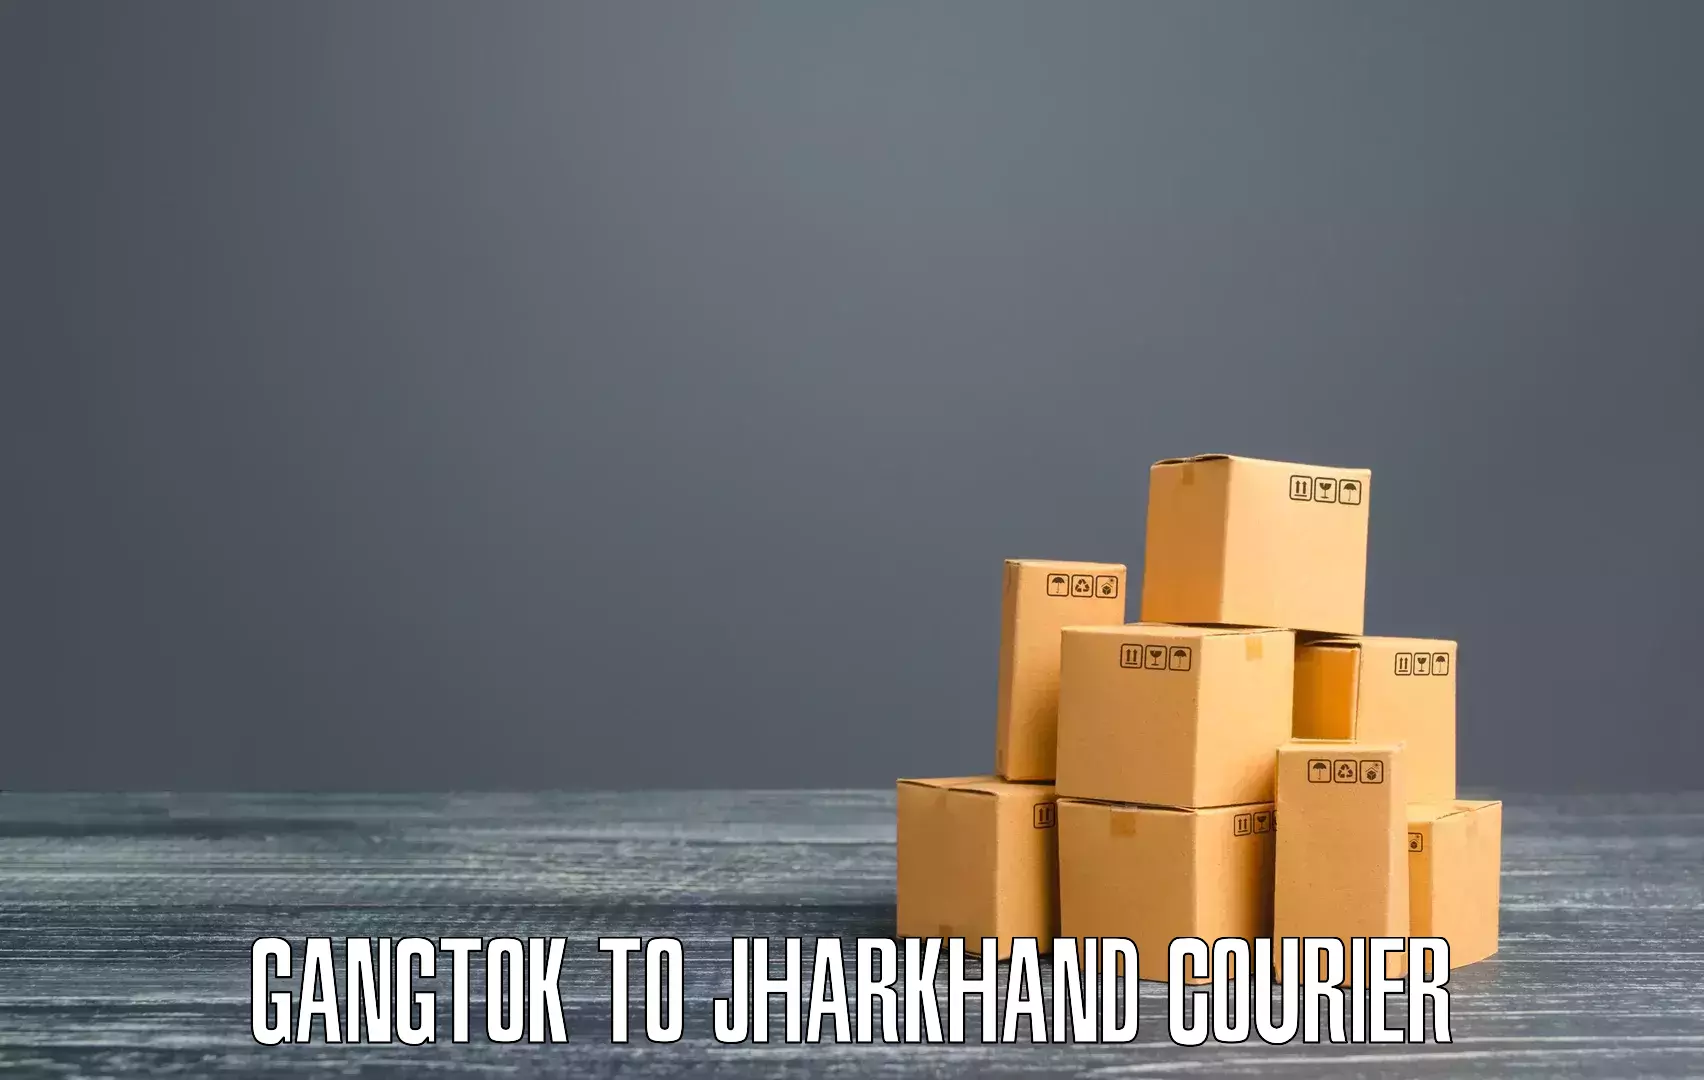 Special handling courier Gangtok to Mahagama